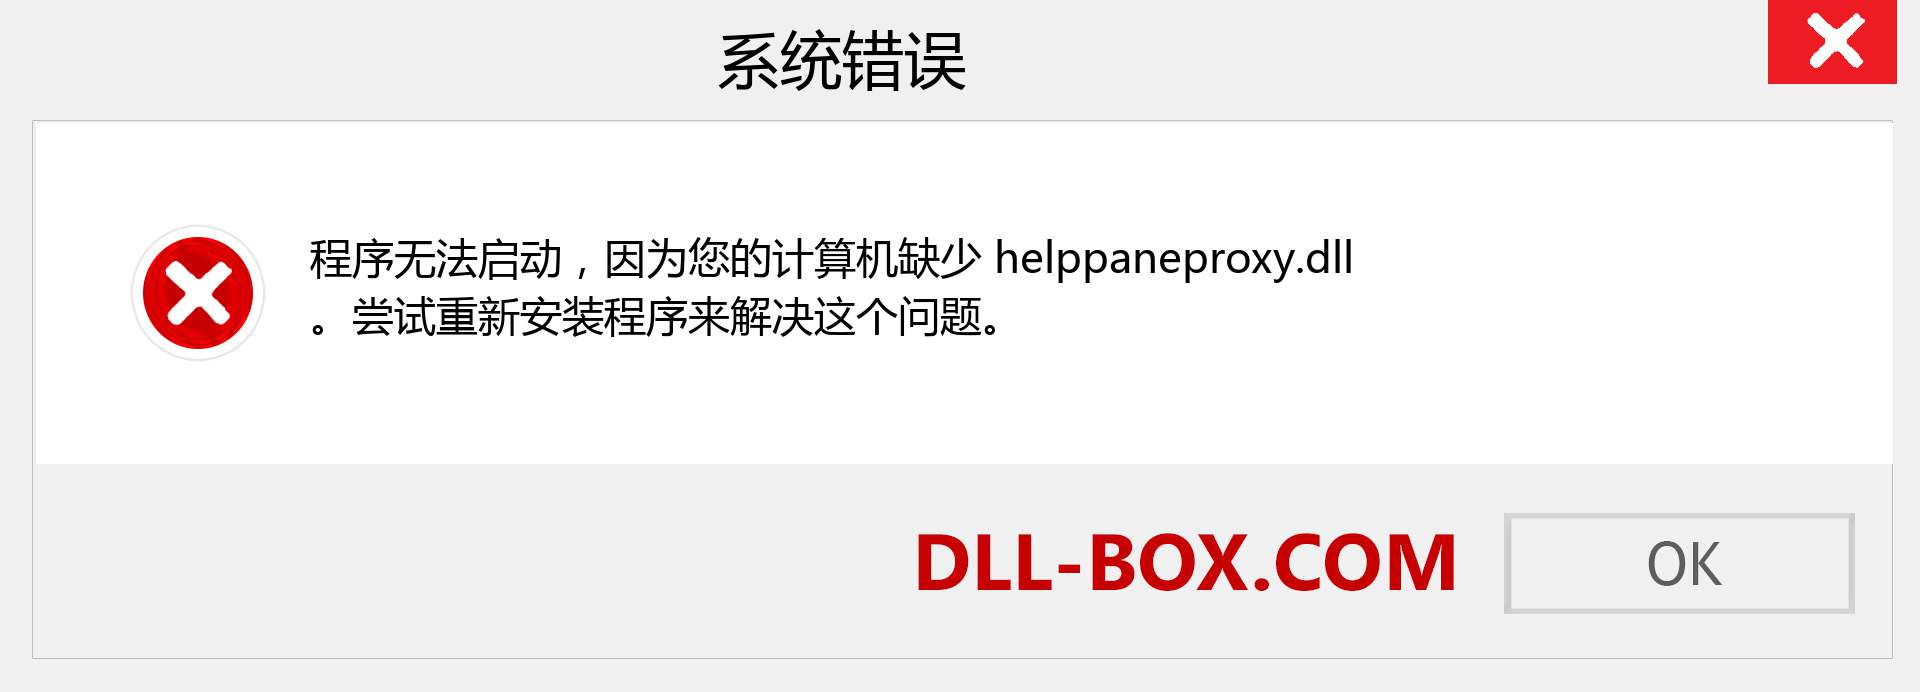 helppaneproxy.dll 文件丢失？。 适用于 Windows 7、8、10 的下载 - 修复 Windows、照片、图像上的 helppaneproxy dll 丢失错误